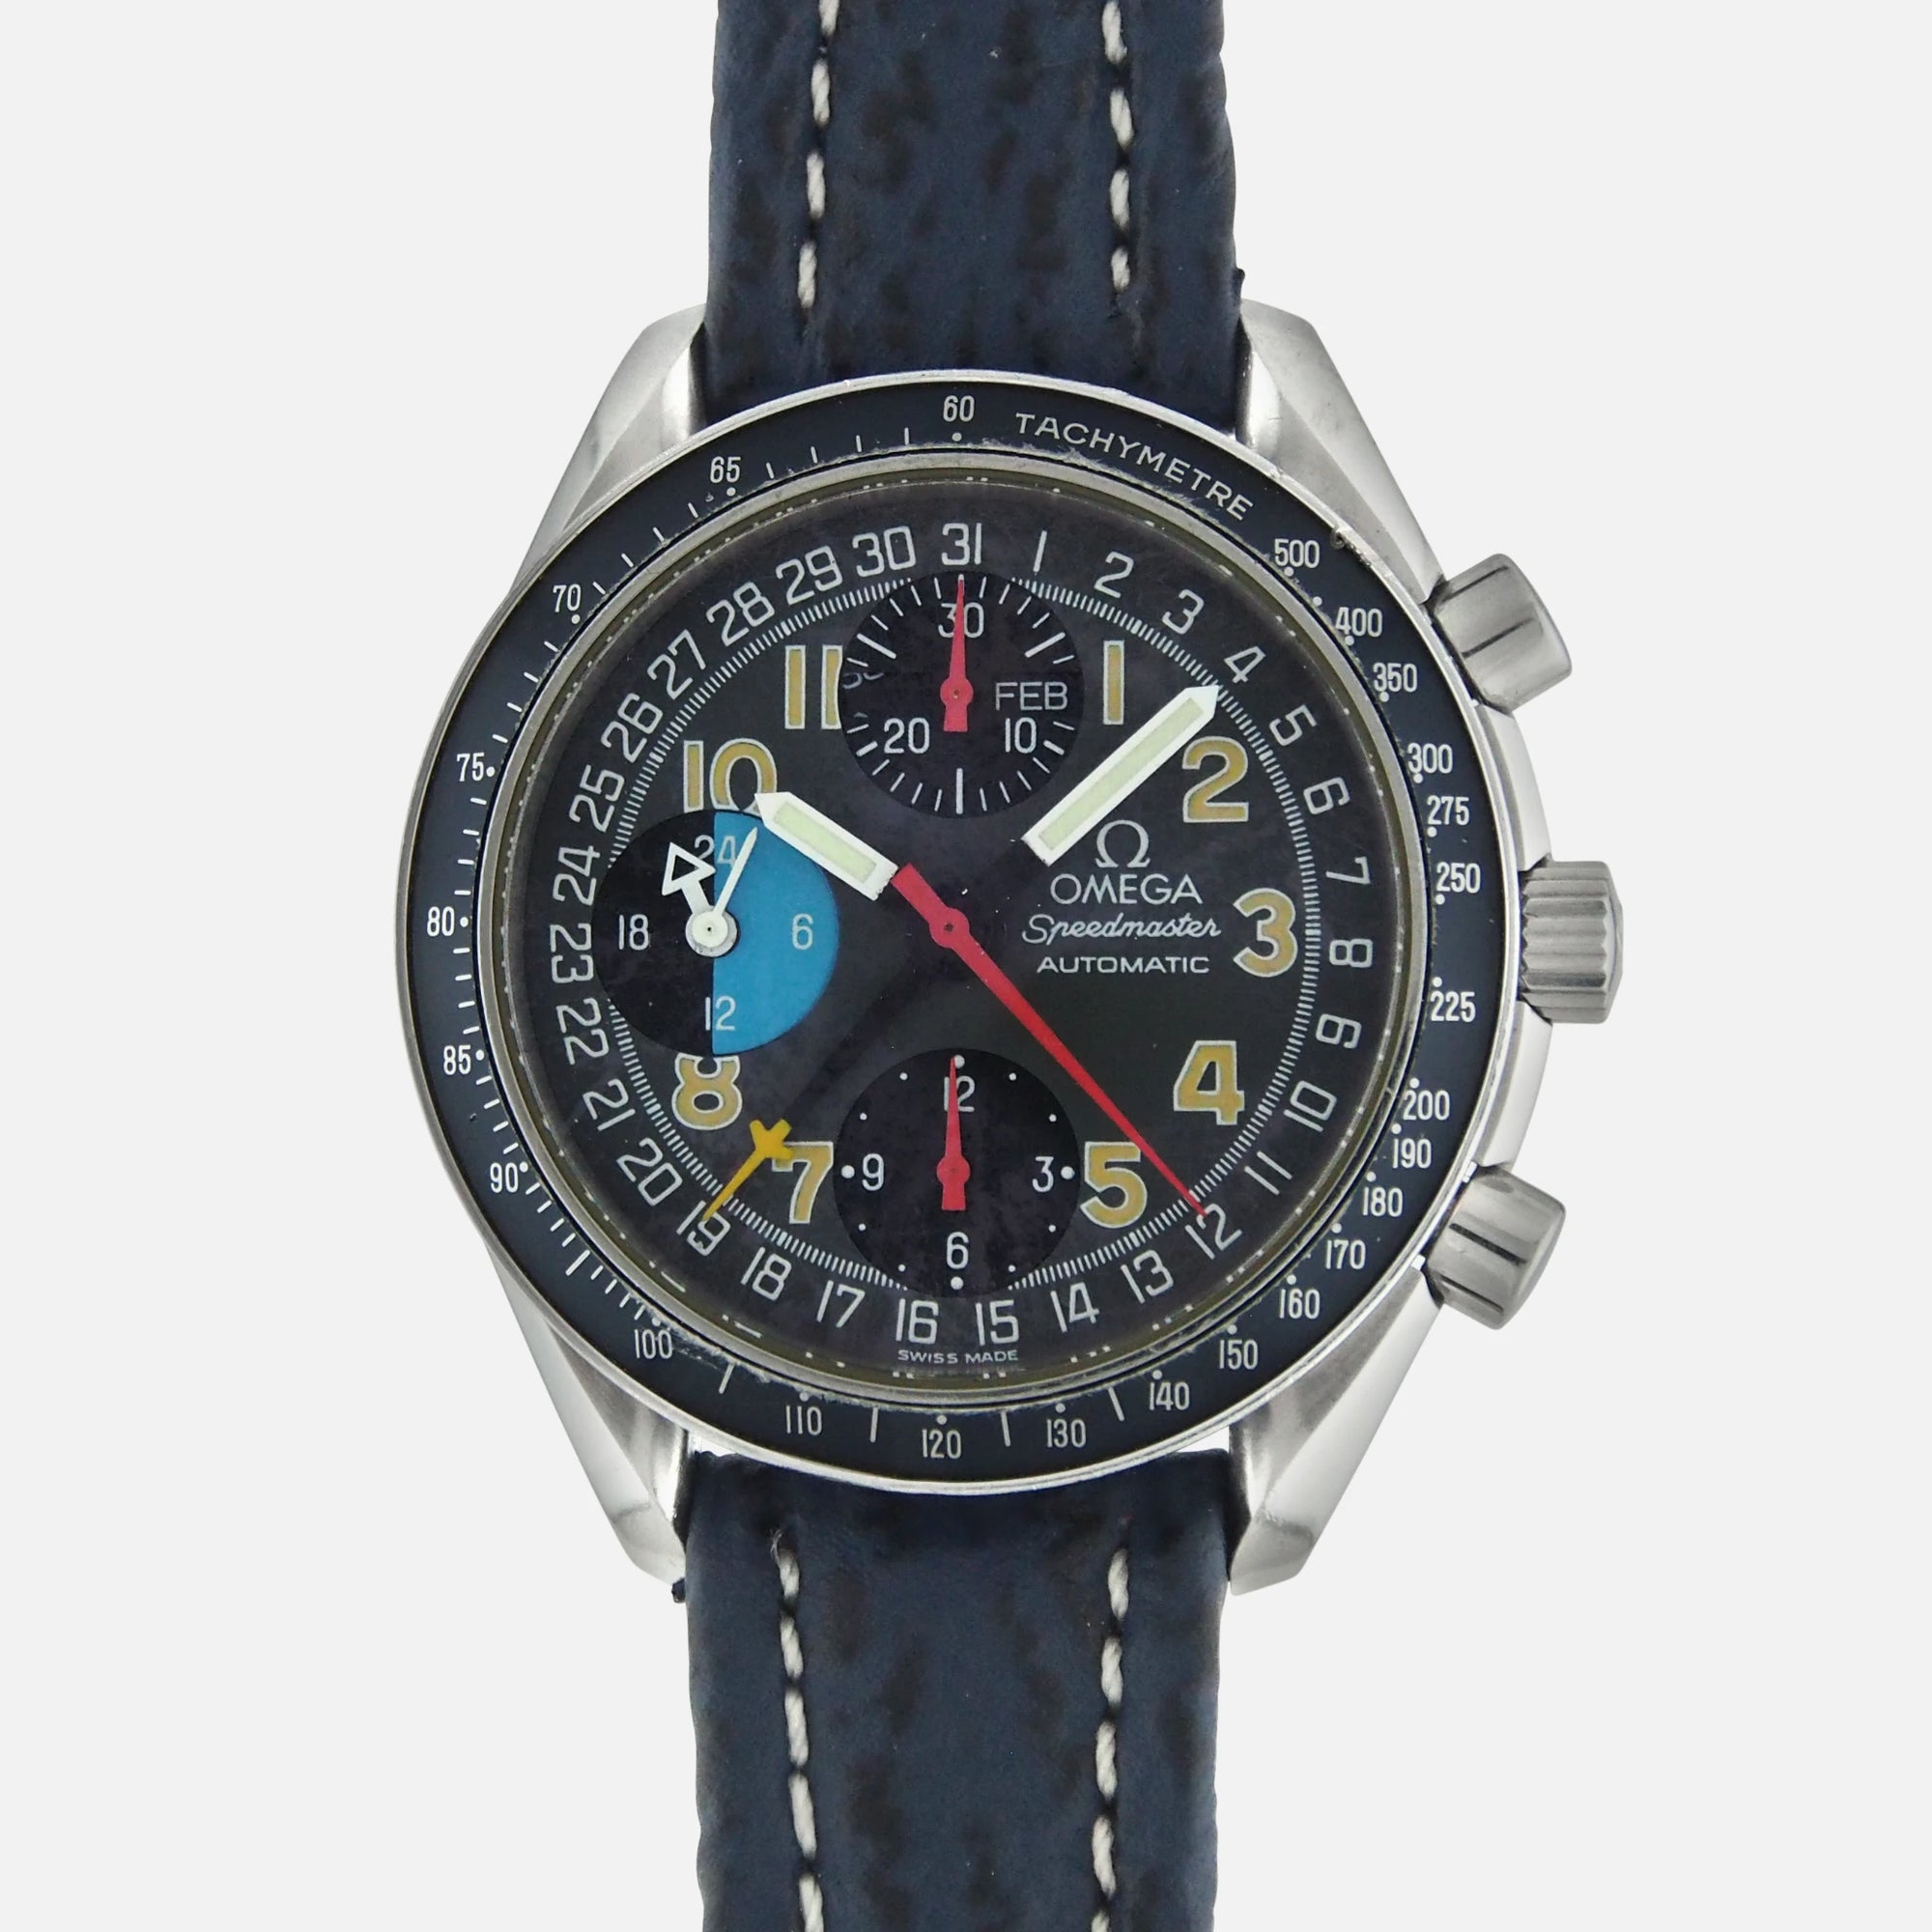 1990s Vintage Omega Speedmaster Schumacher MK40 Day-Date Ref. 3820.53.26 Triple Date Calendar Ref 175.0084 375.0084 Vintage Watch Leader